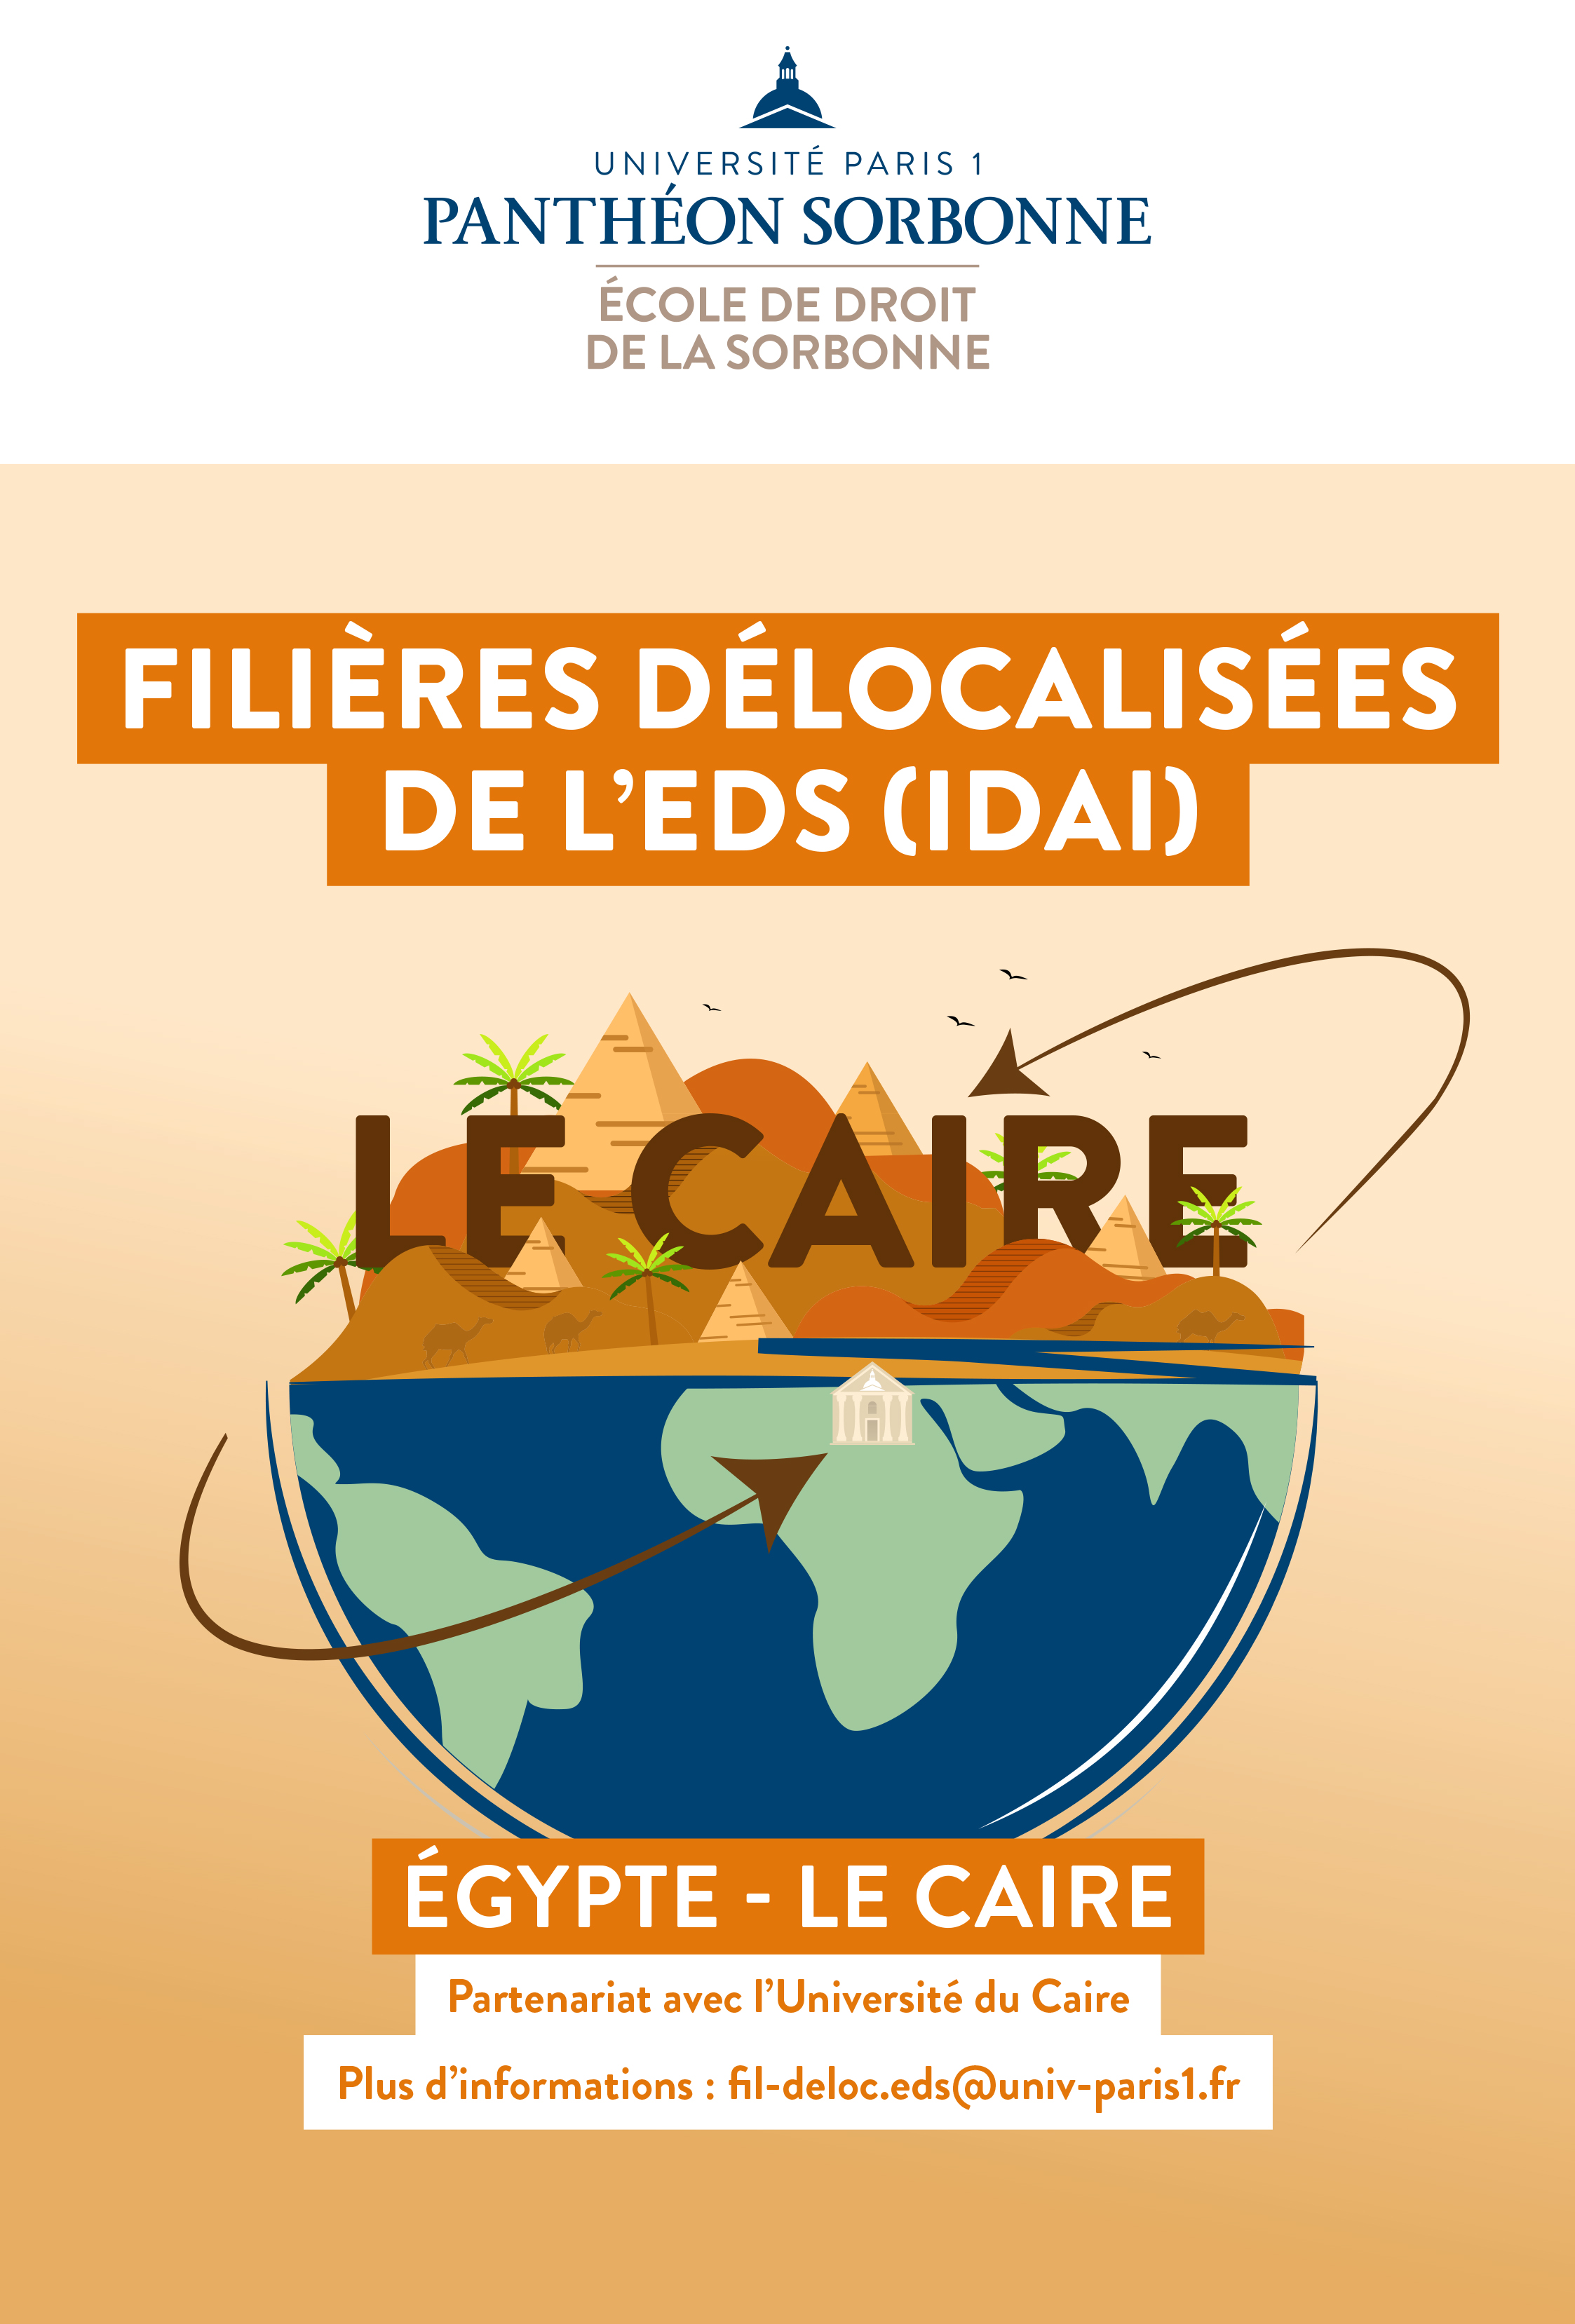 Filières délocalisées de l'EDS (EDSC) - Egypte Le Caire - Partenariat avec l'Université du Caire. Plus d'informations : fil-deloc.eds@univ-paris1.fr